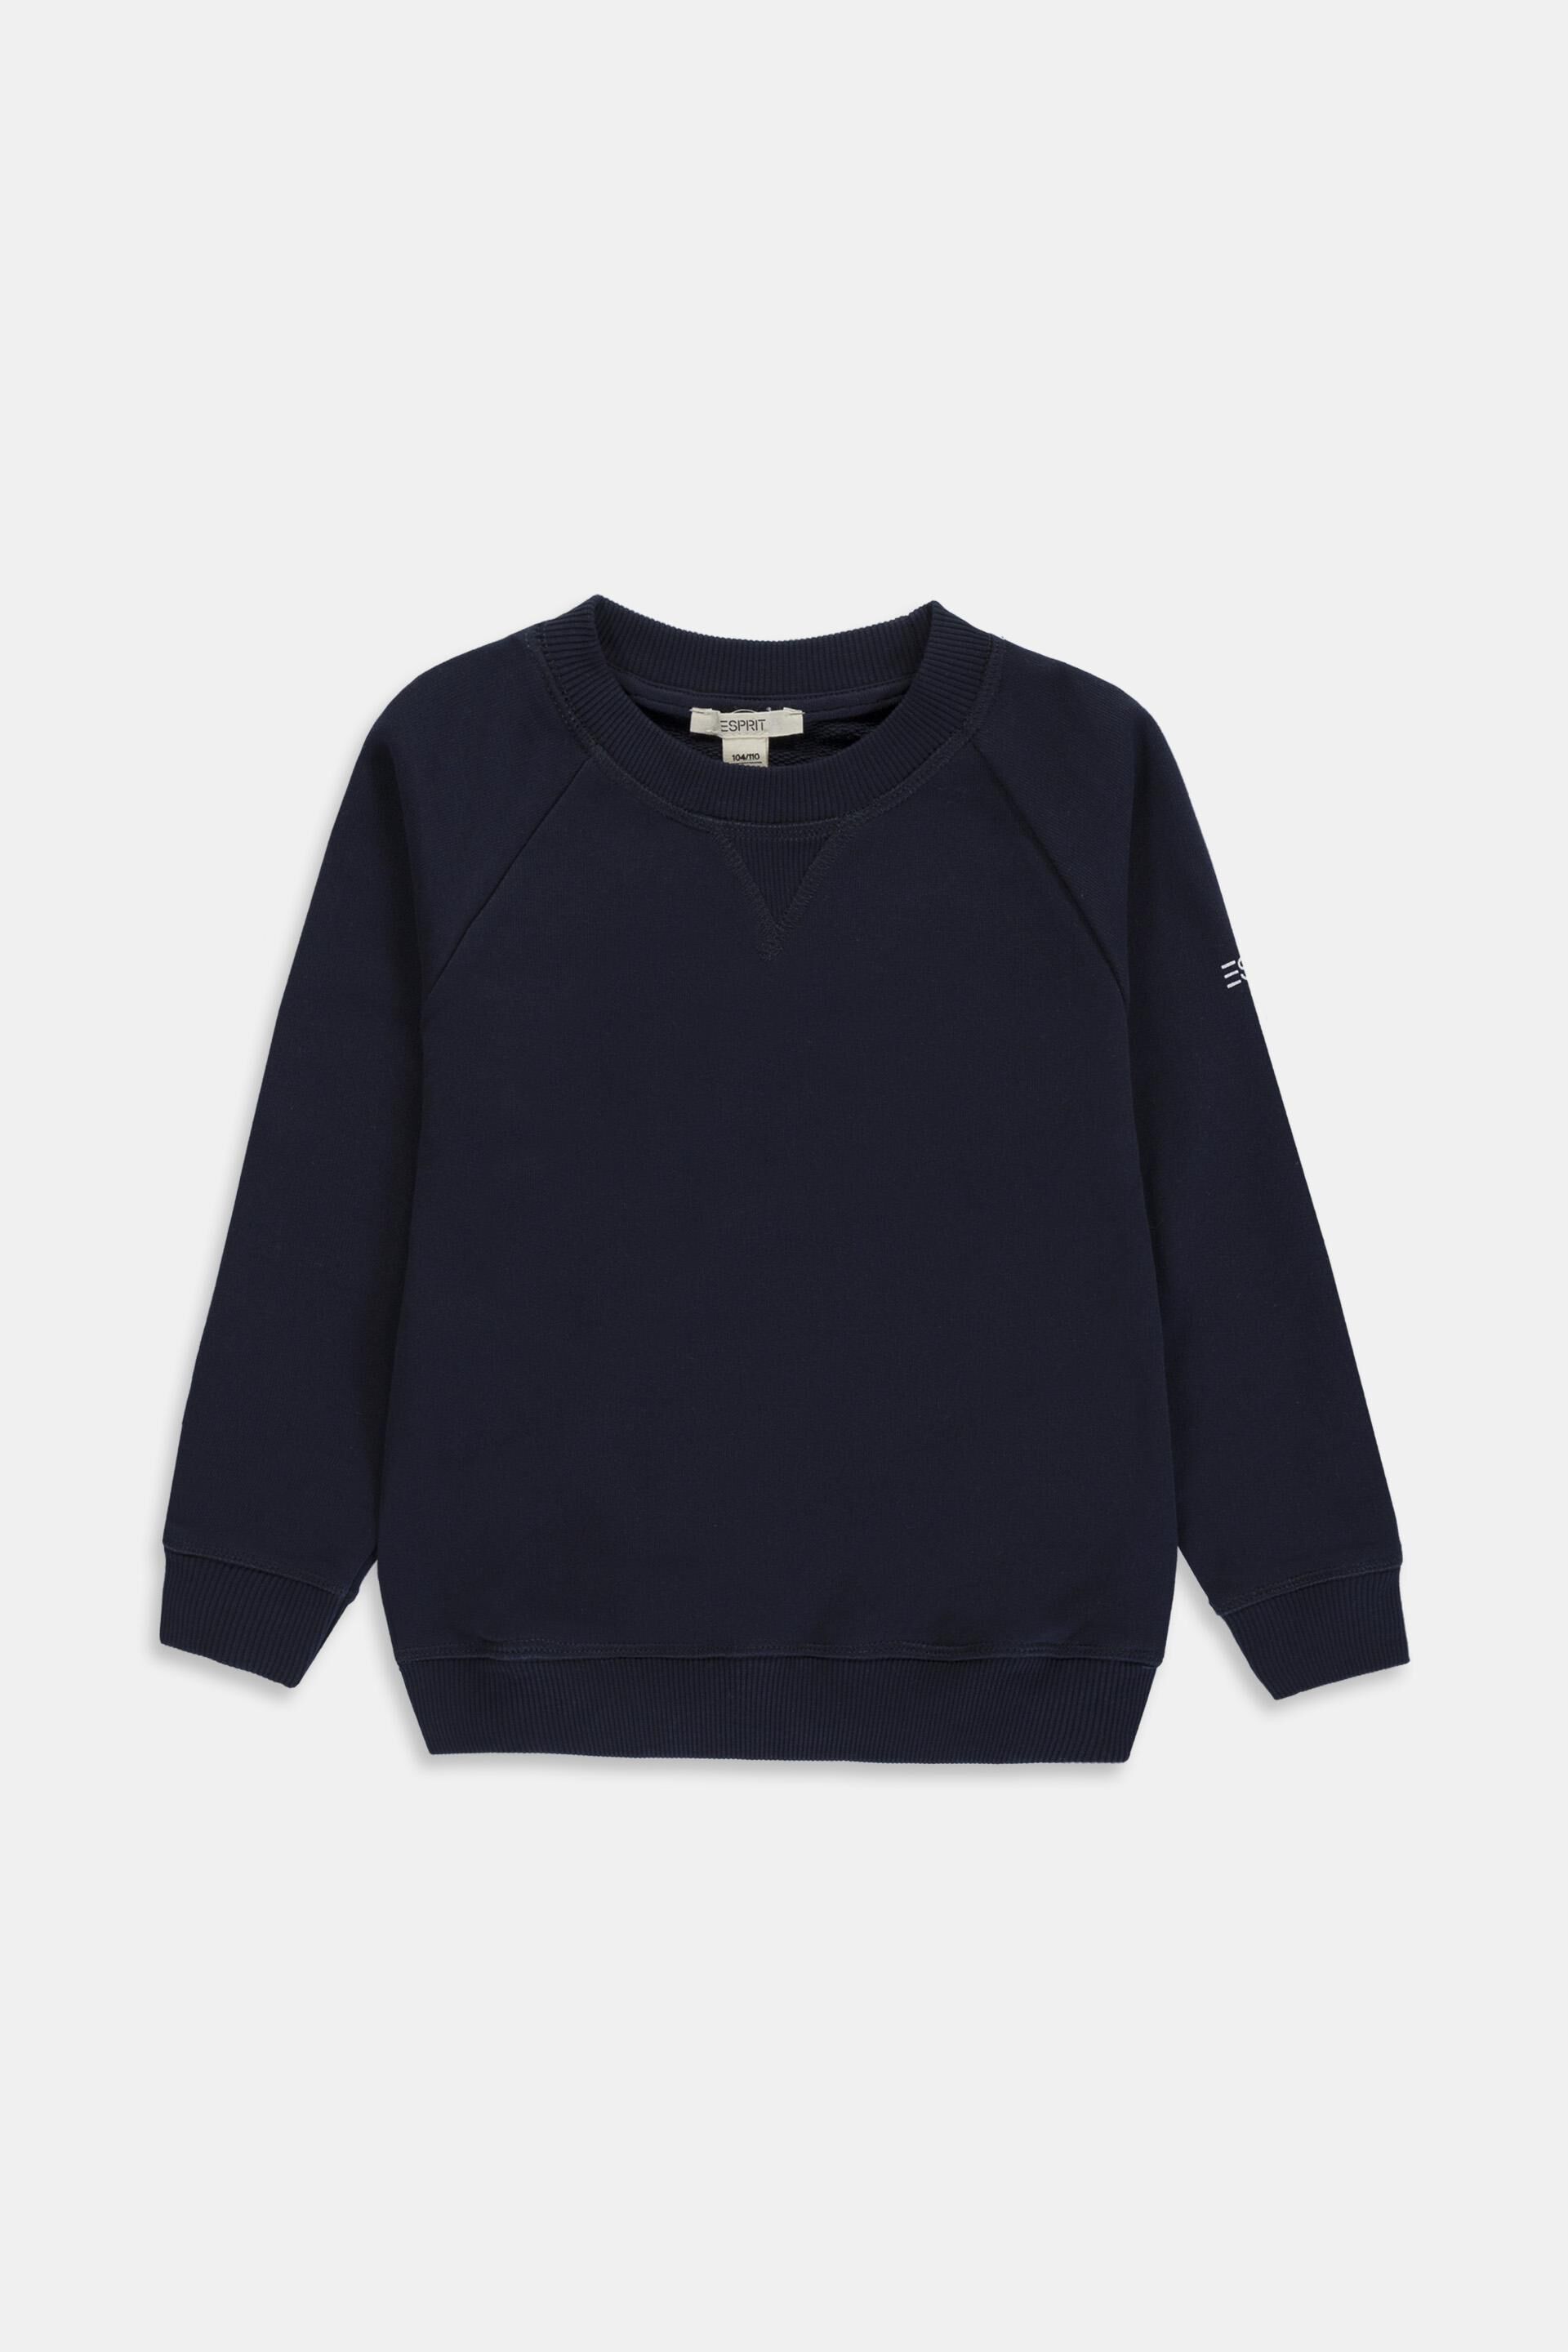 Esprit Teppich Sweatshirt with logo made of 100% cotton